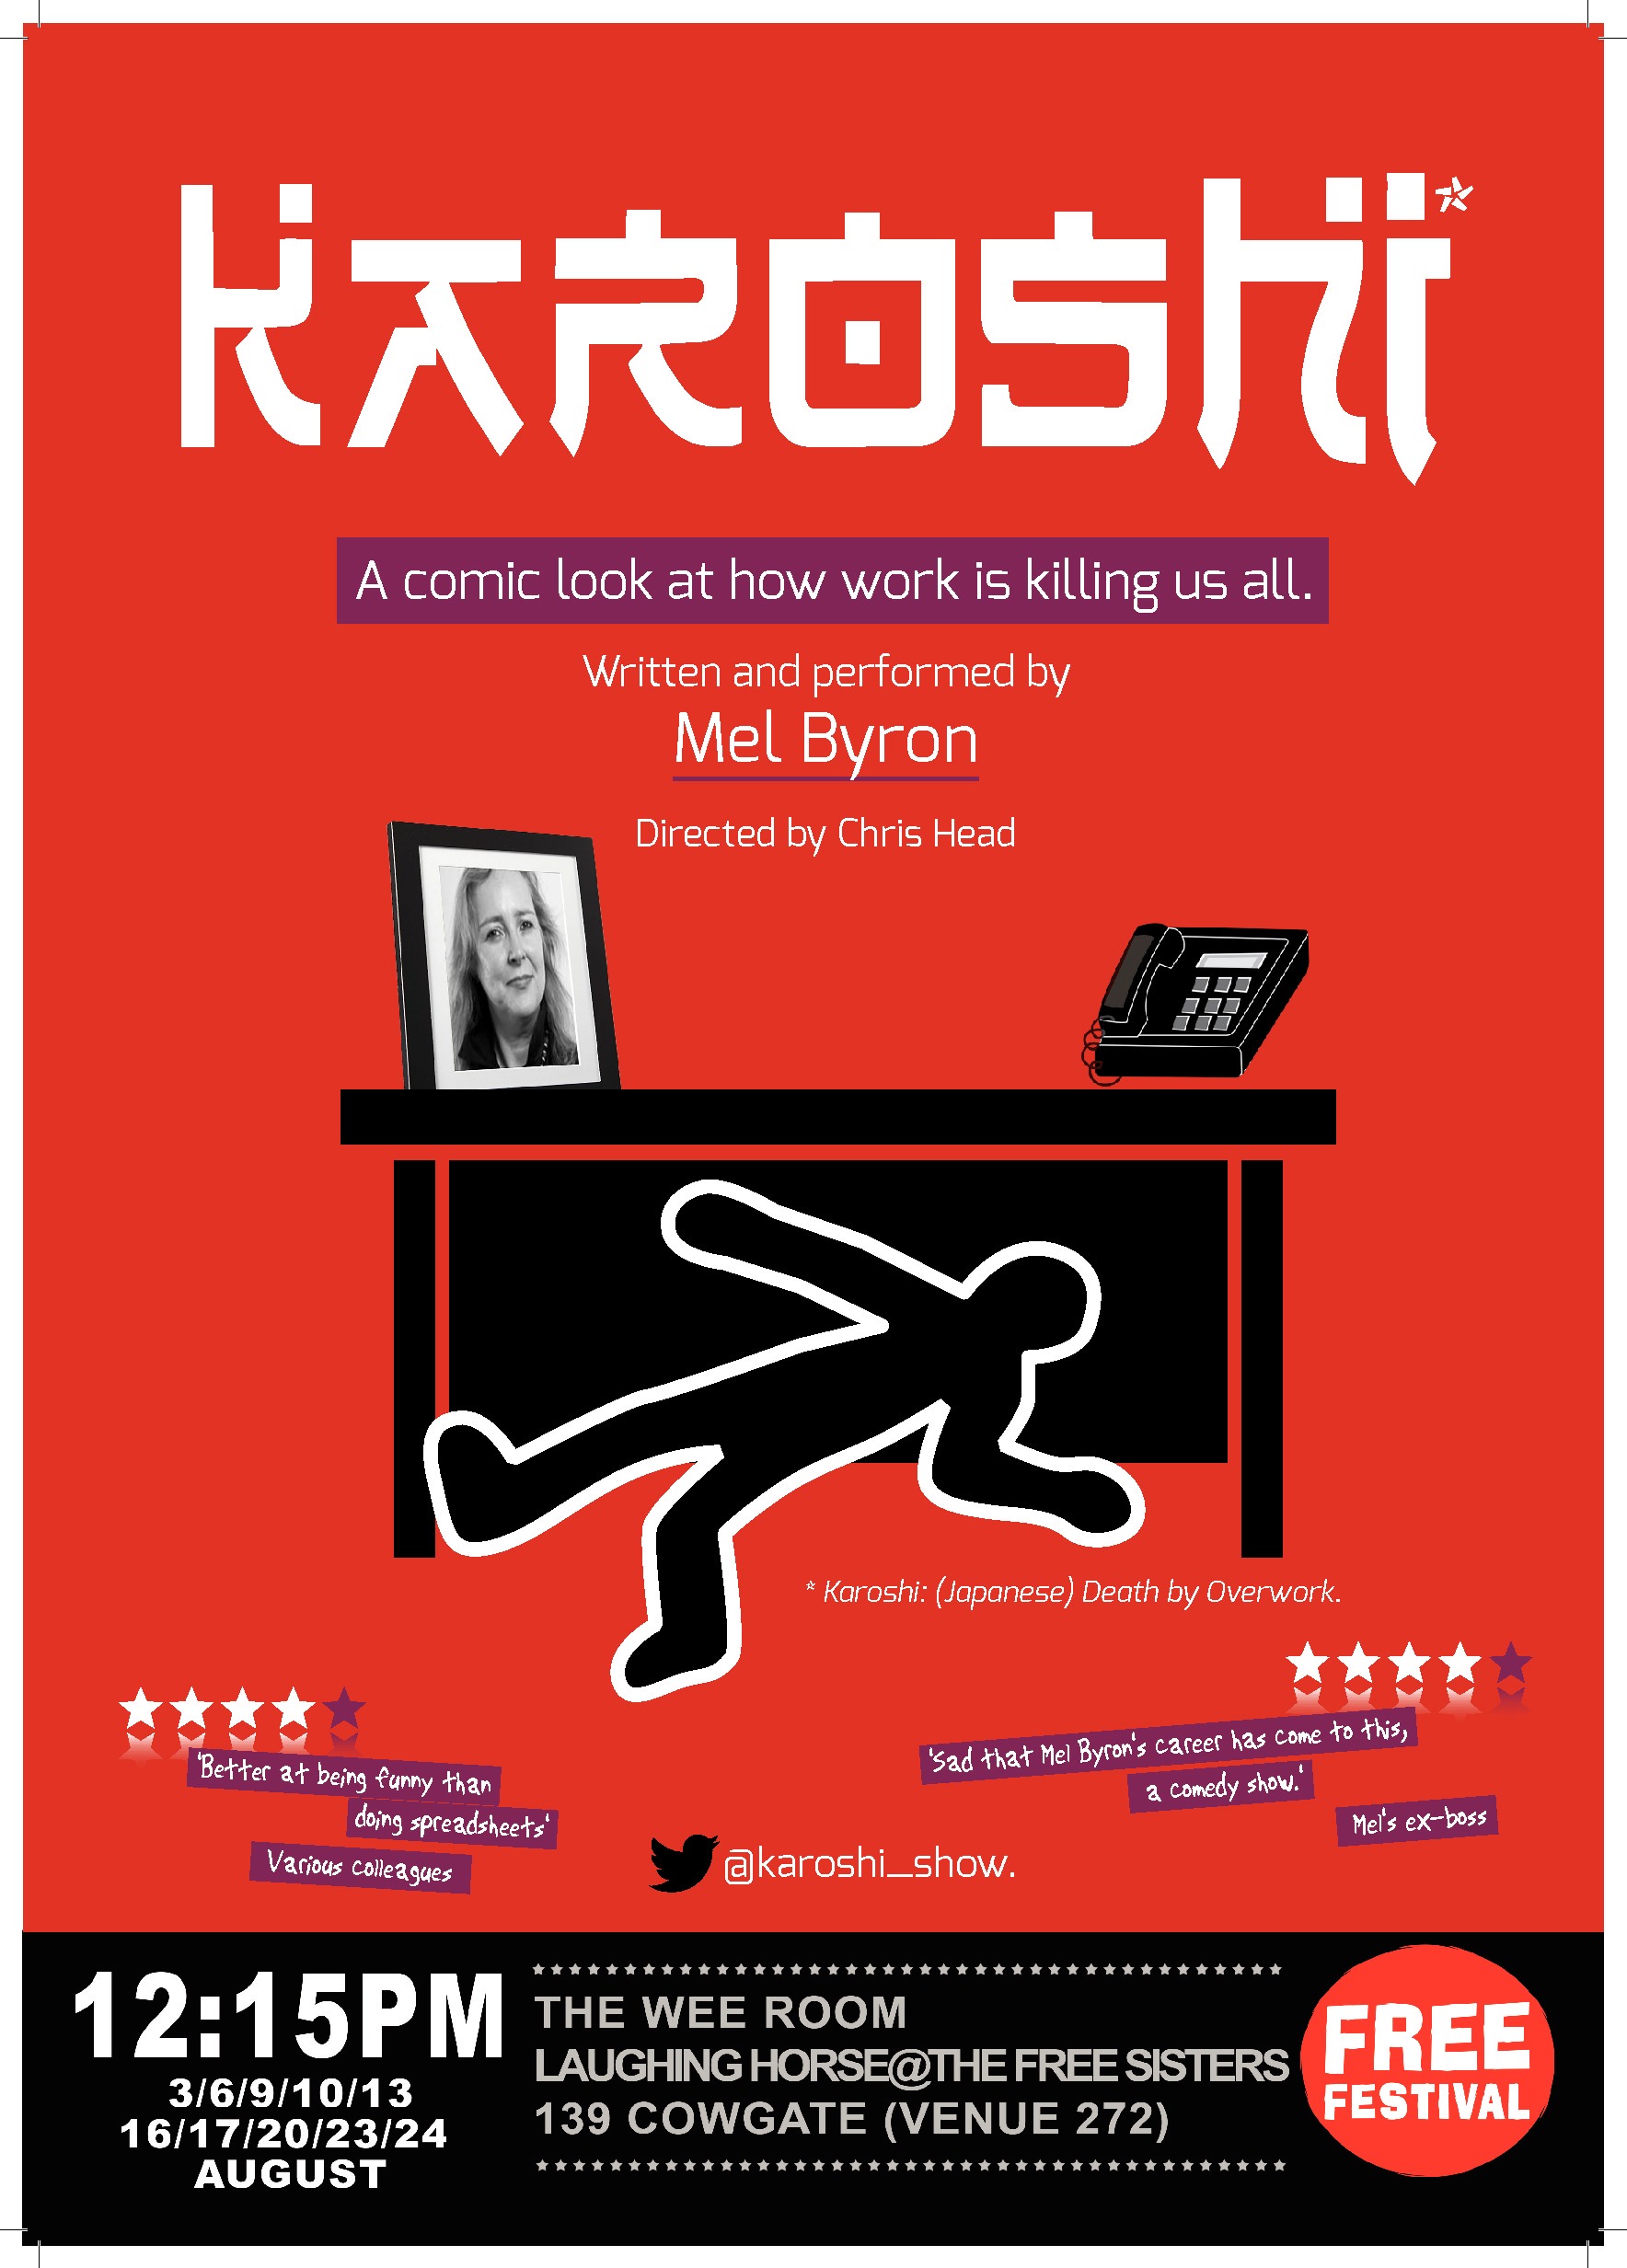 The poster for Karoshi